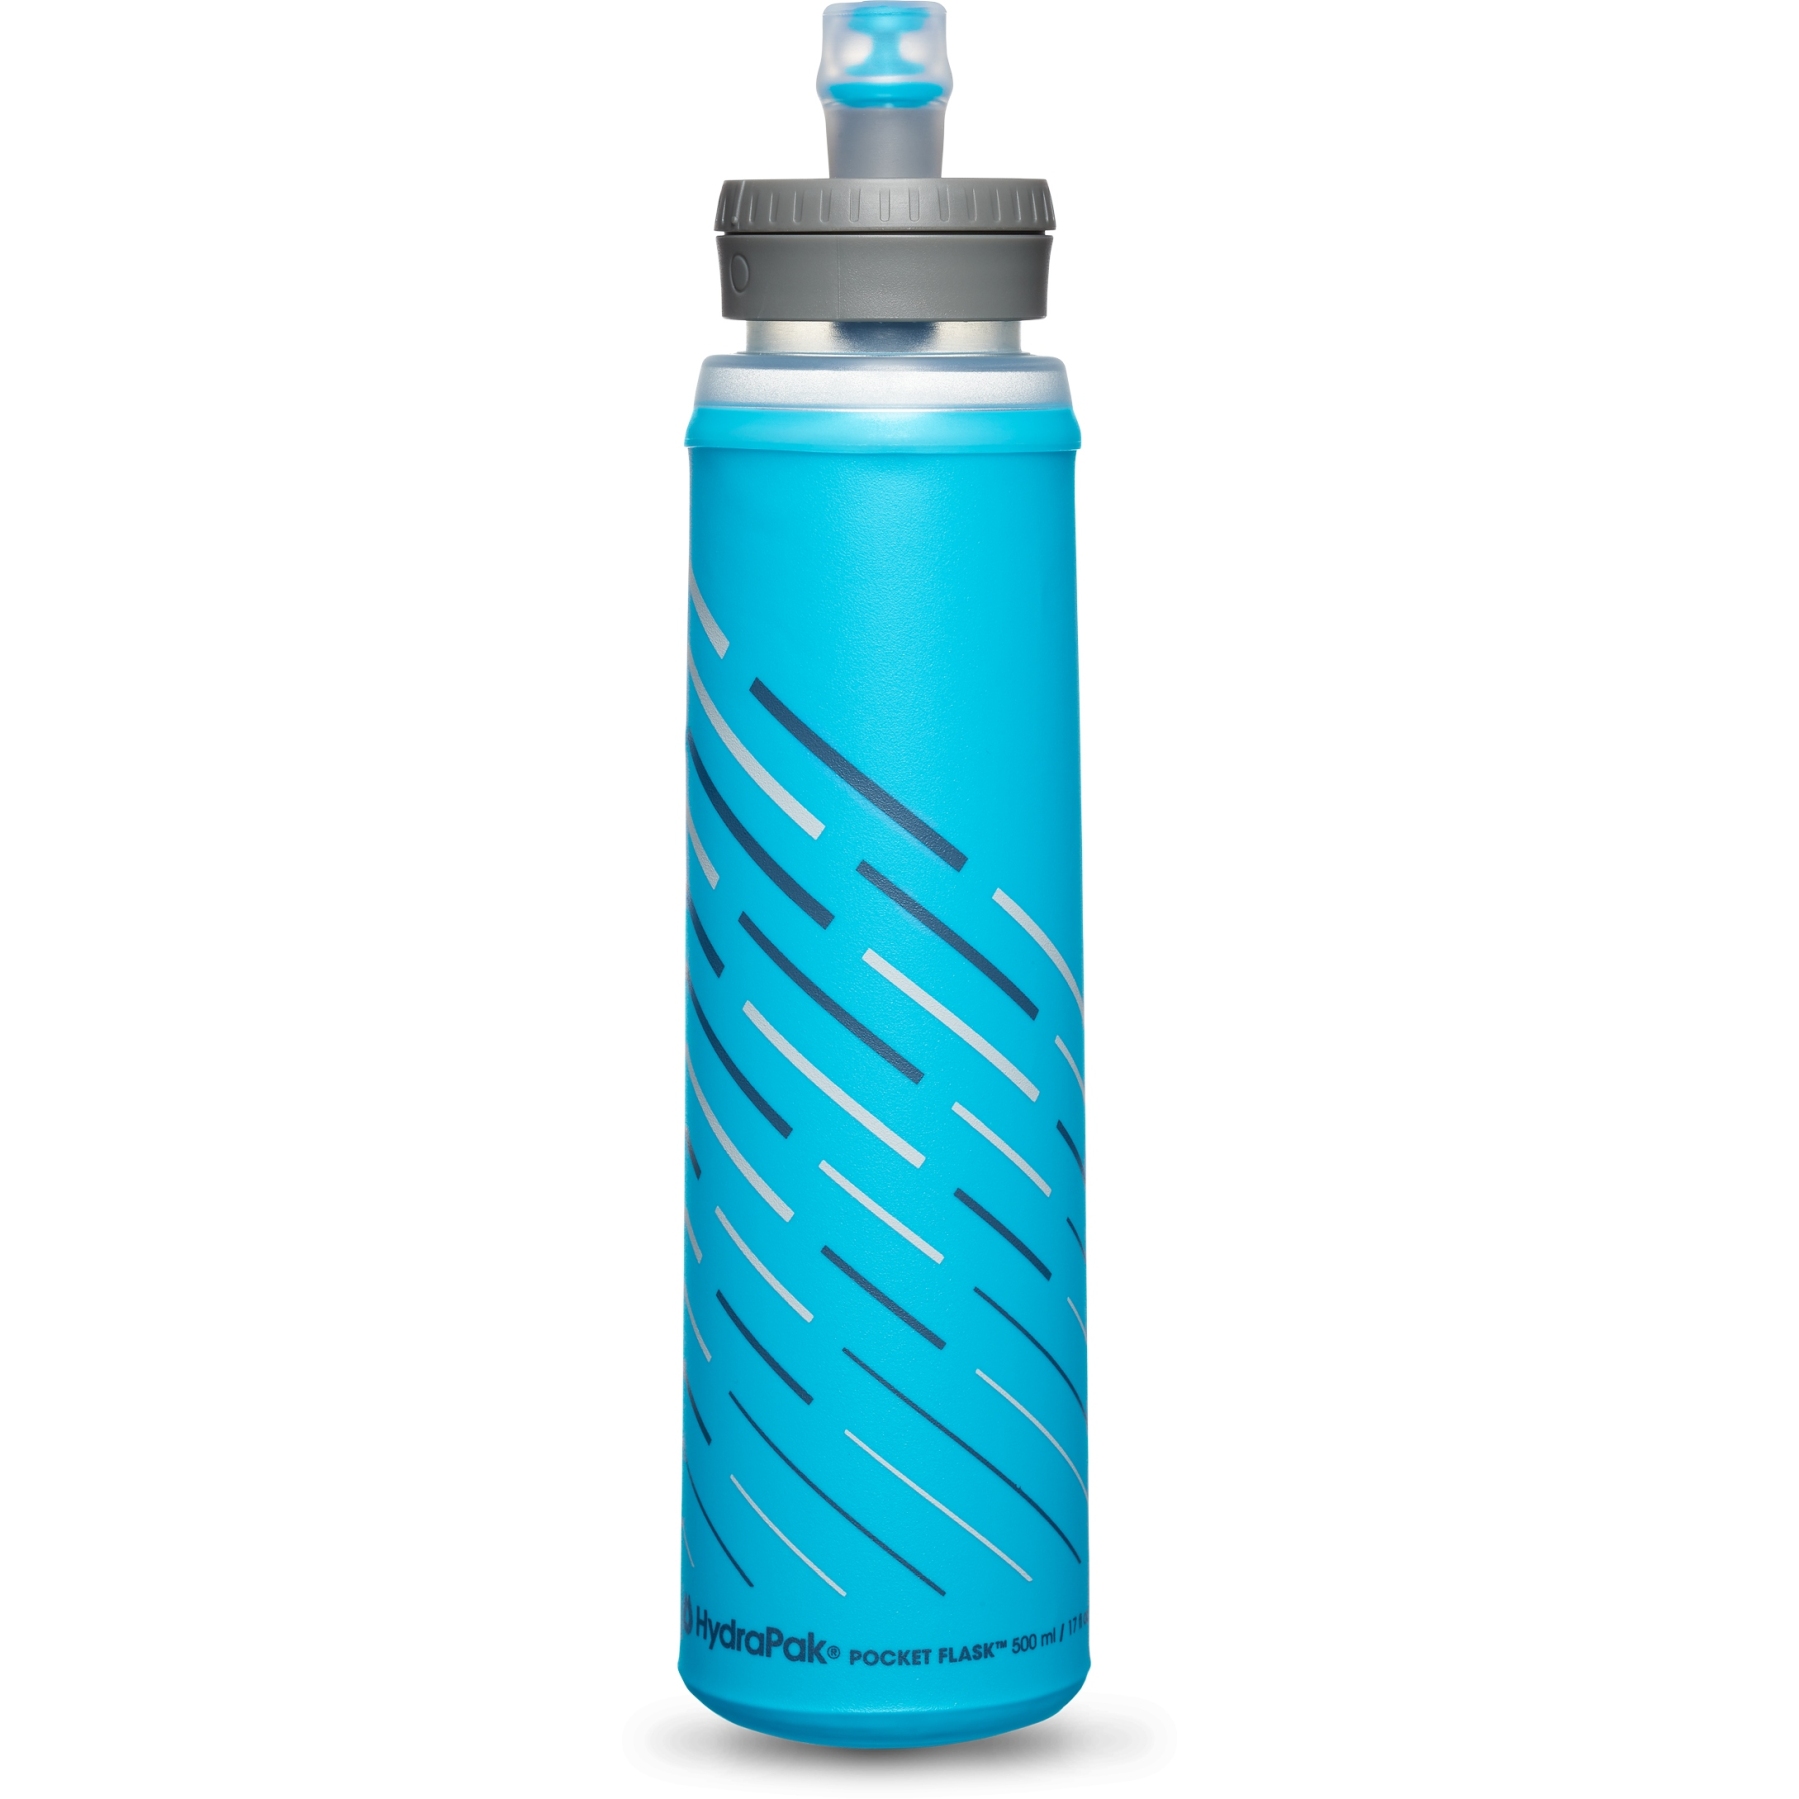 Produktbild von Hydrapak Pocket Flask Faltflasche - 500 ml - malibu